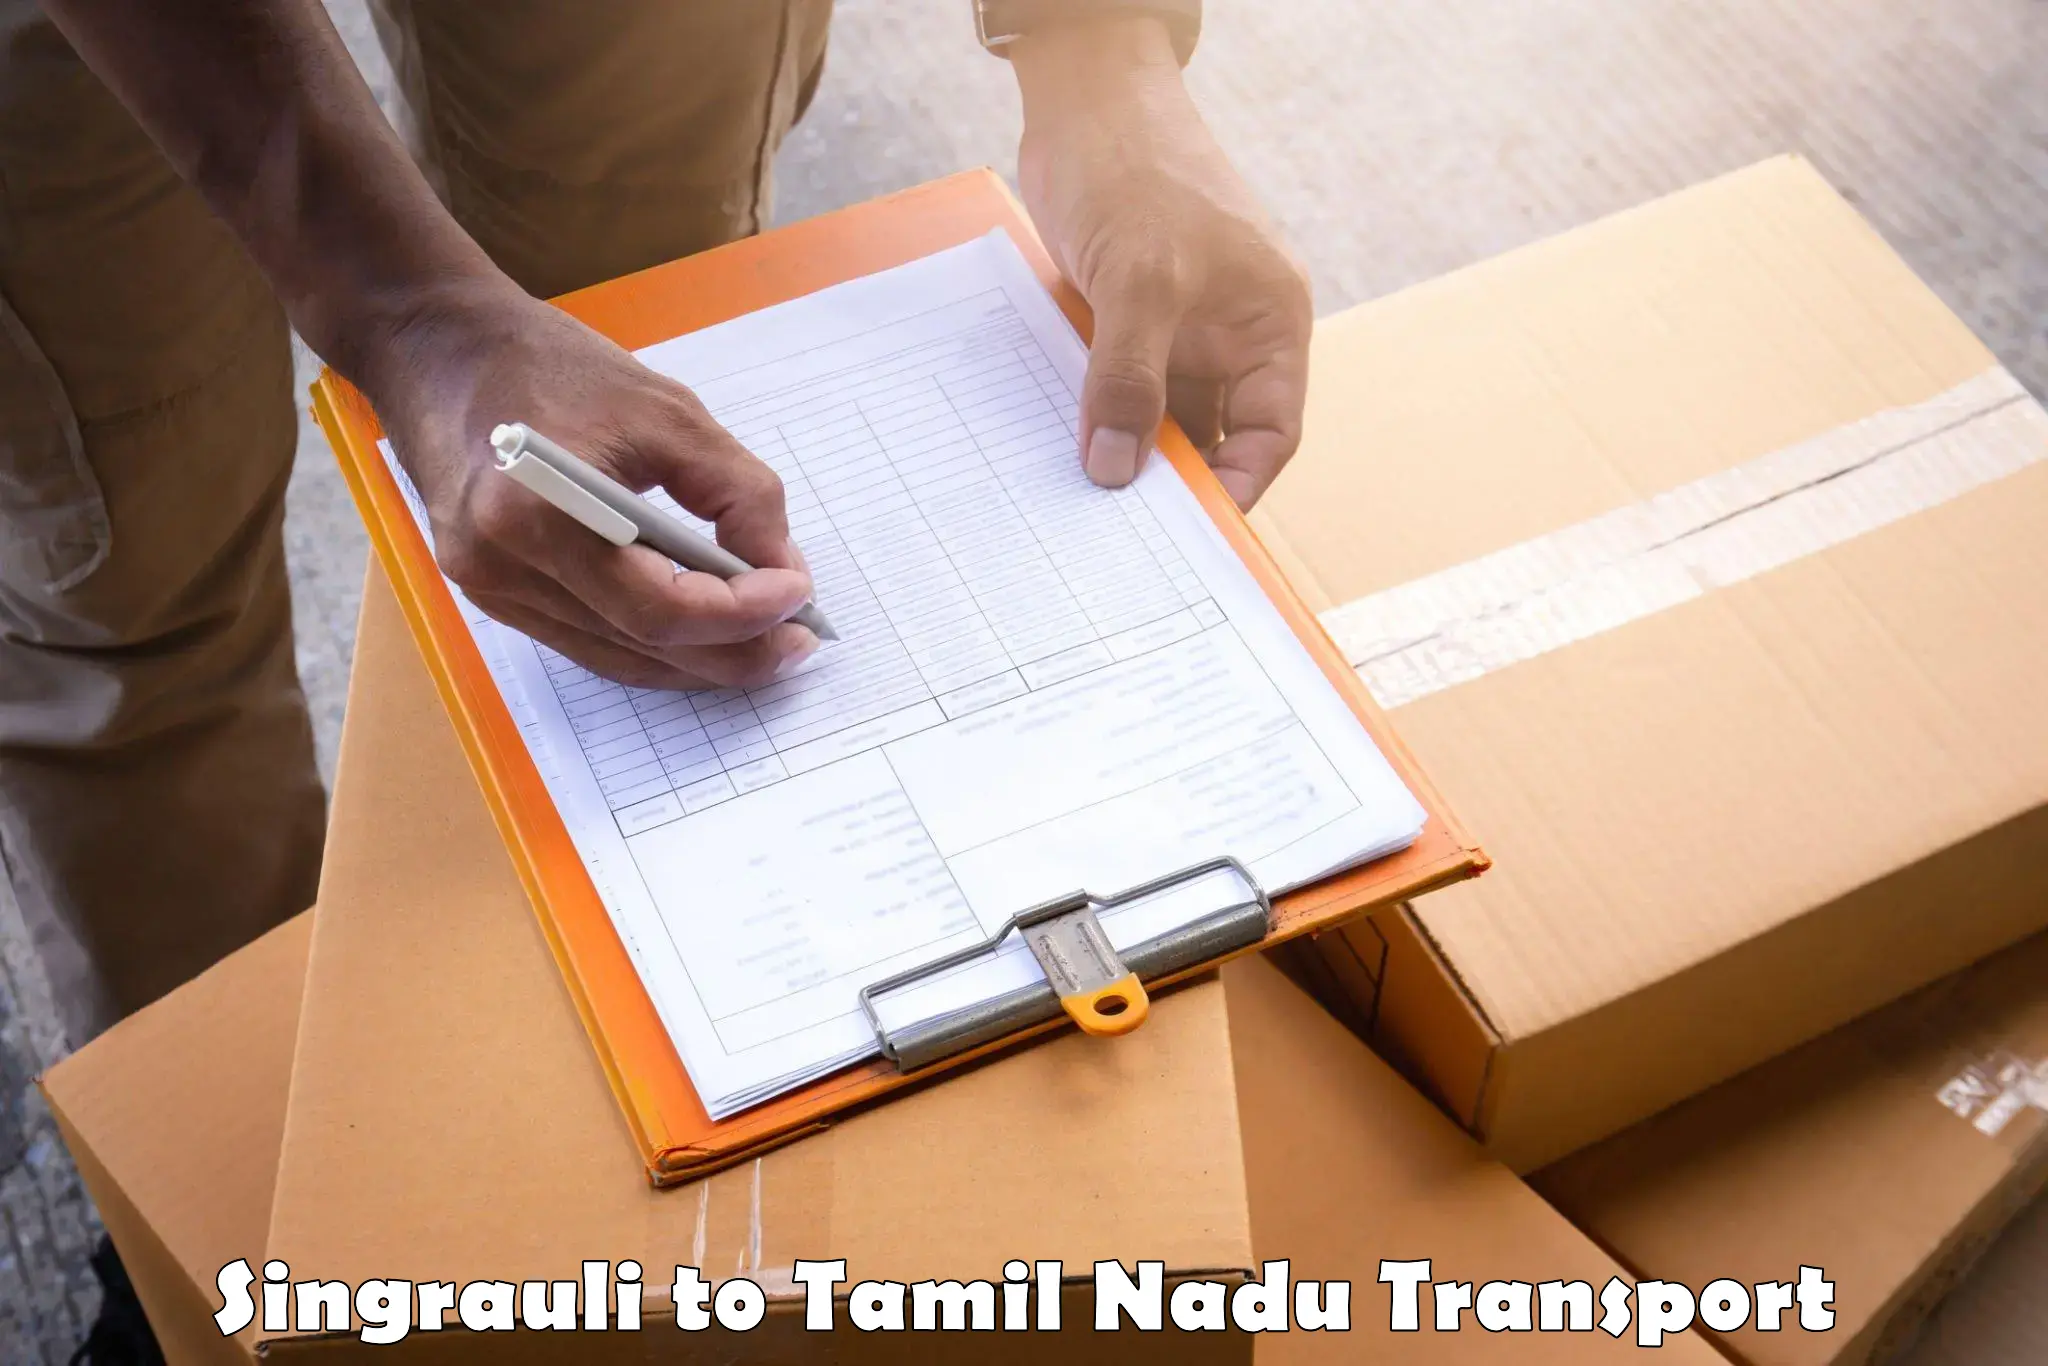 Pick up transport service Singrauli to Rasipuram